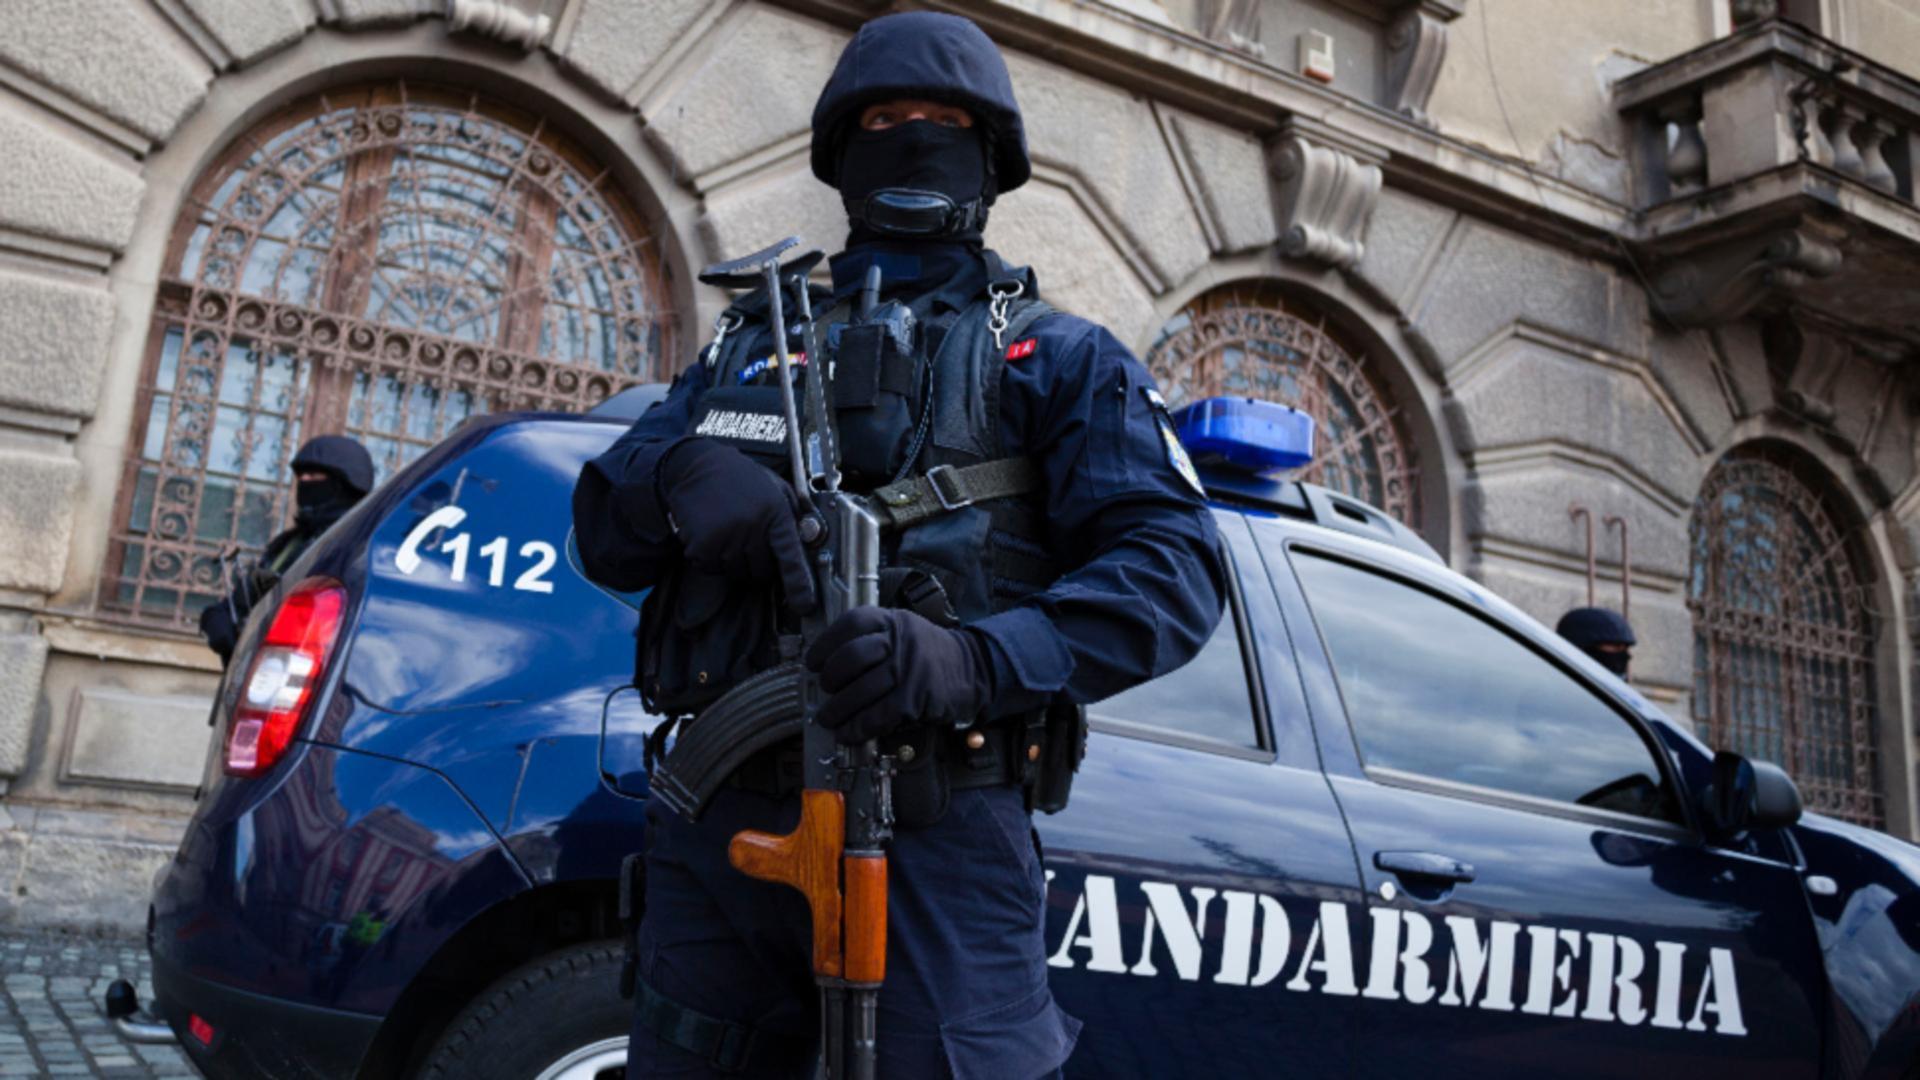 Jandarmii aduc lămuriri cu privire la presupuse incidente grave de la protestele din Piața Victoriei